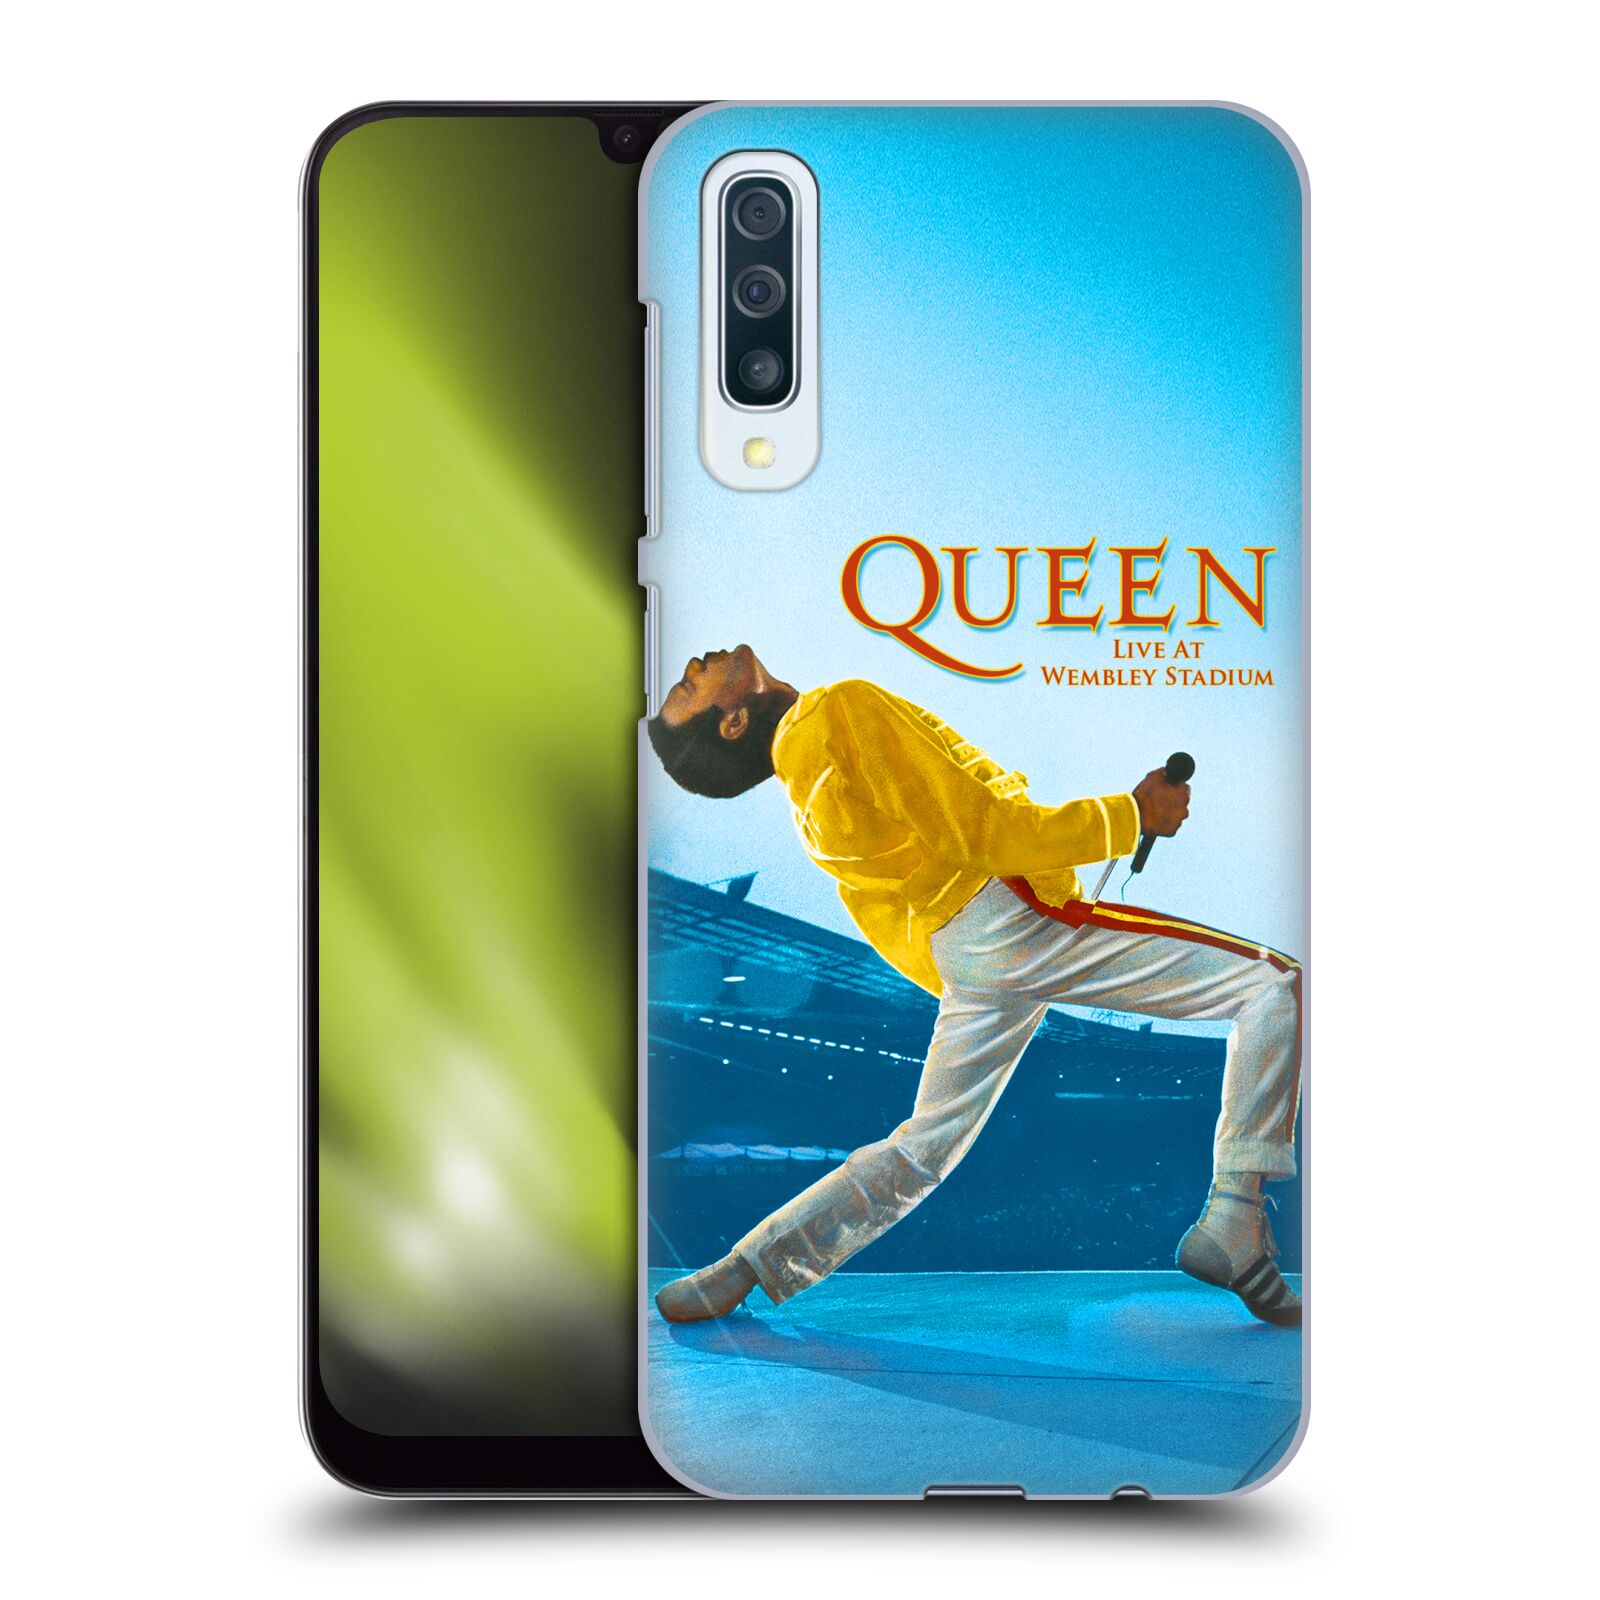 Plastové pouzdro na mobil Samsung Galaxy A50 / A30s - Head Case - Queen - Freddie Mercury (Plastový kryt, pouzdro, obal na mobilní telefon Samsung Galaxy A50 / A30s z roku 2019 s motivem Queen - Freddie Mercury)